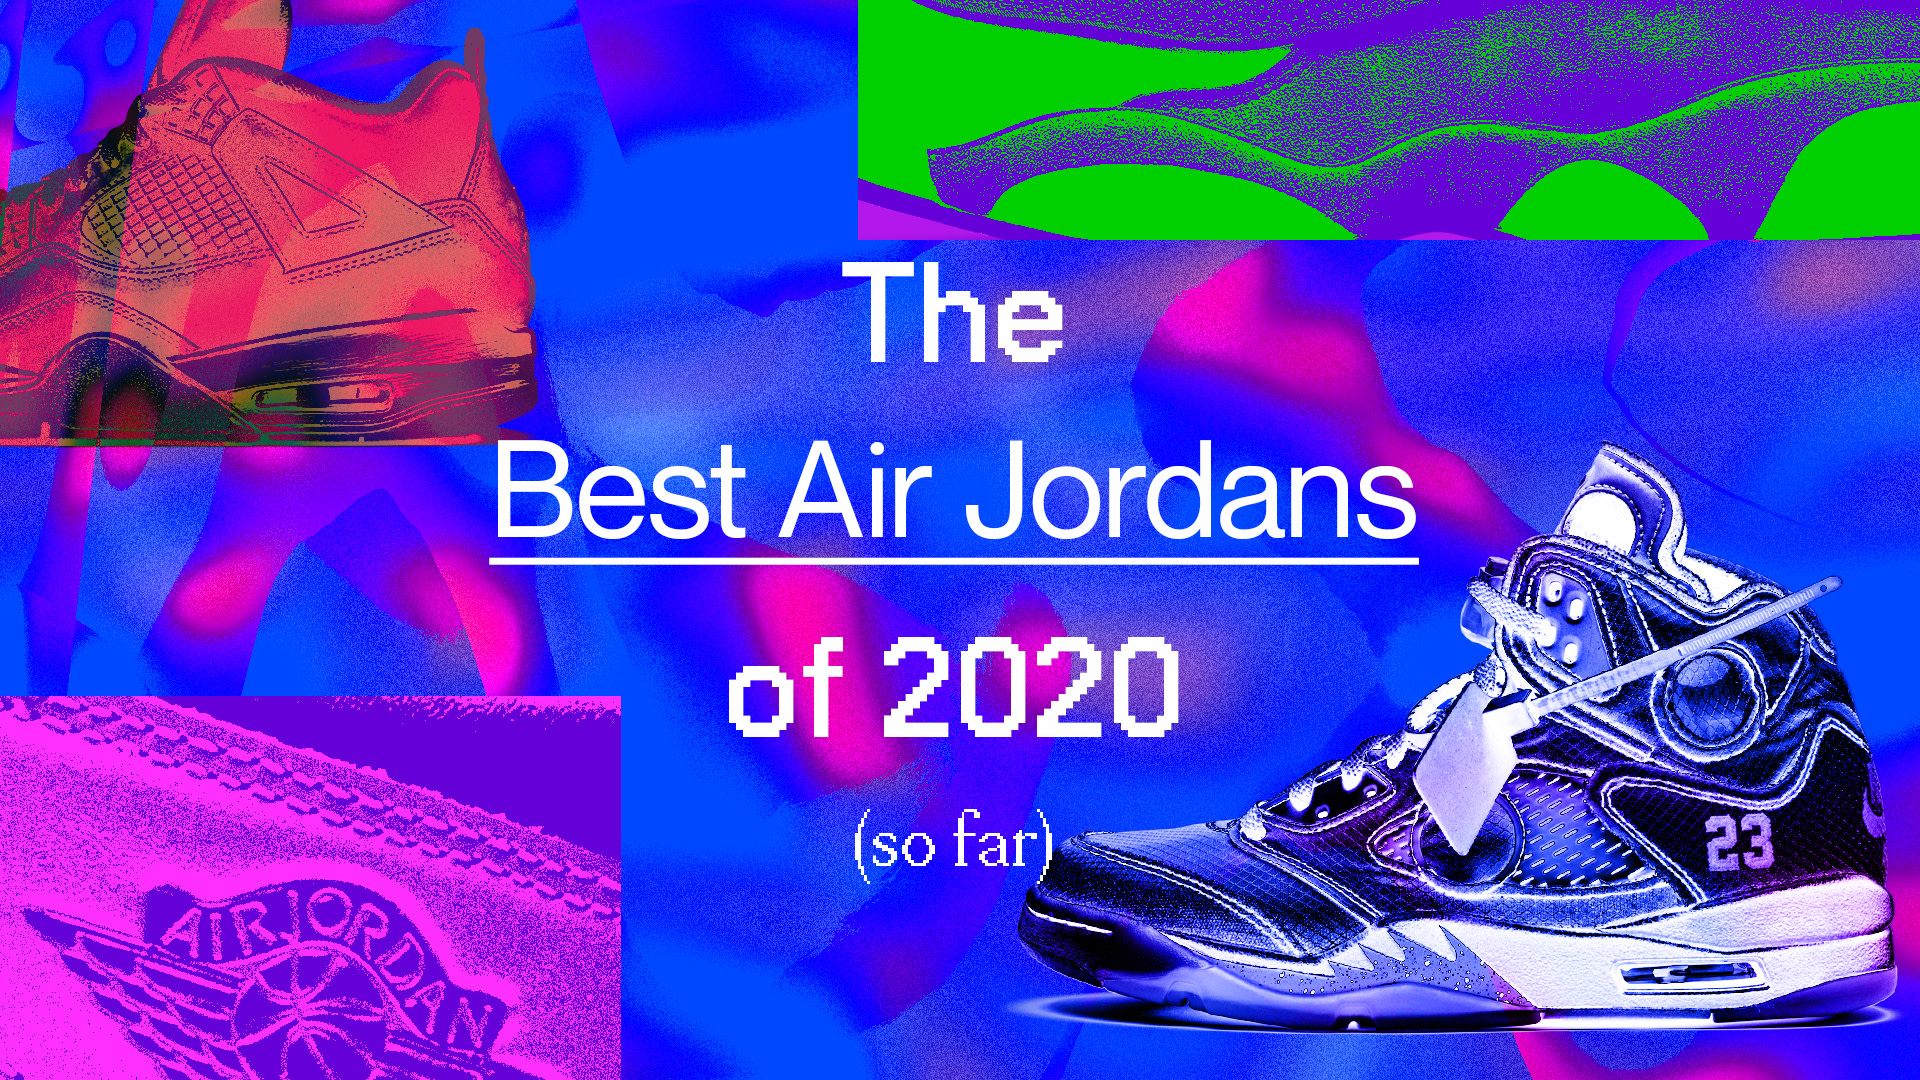 new colorful jordans 2020